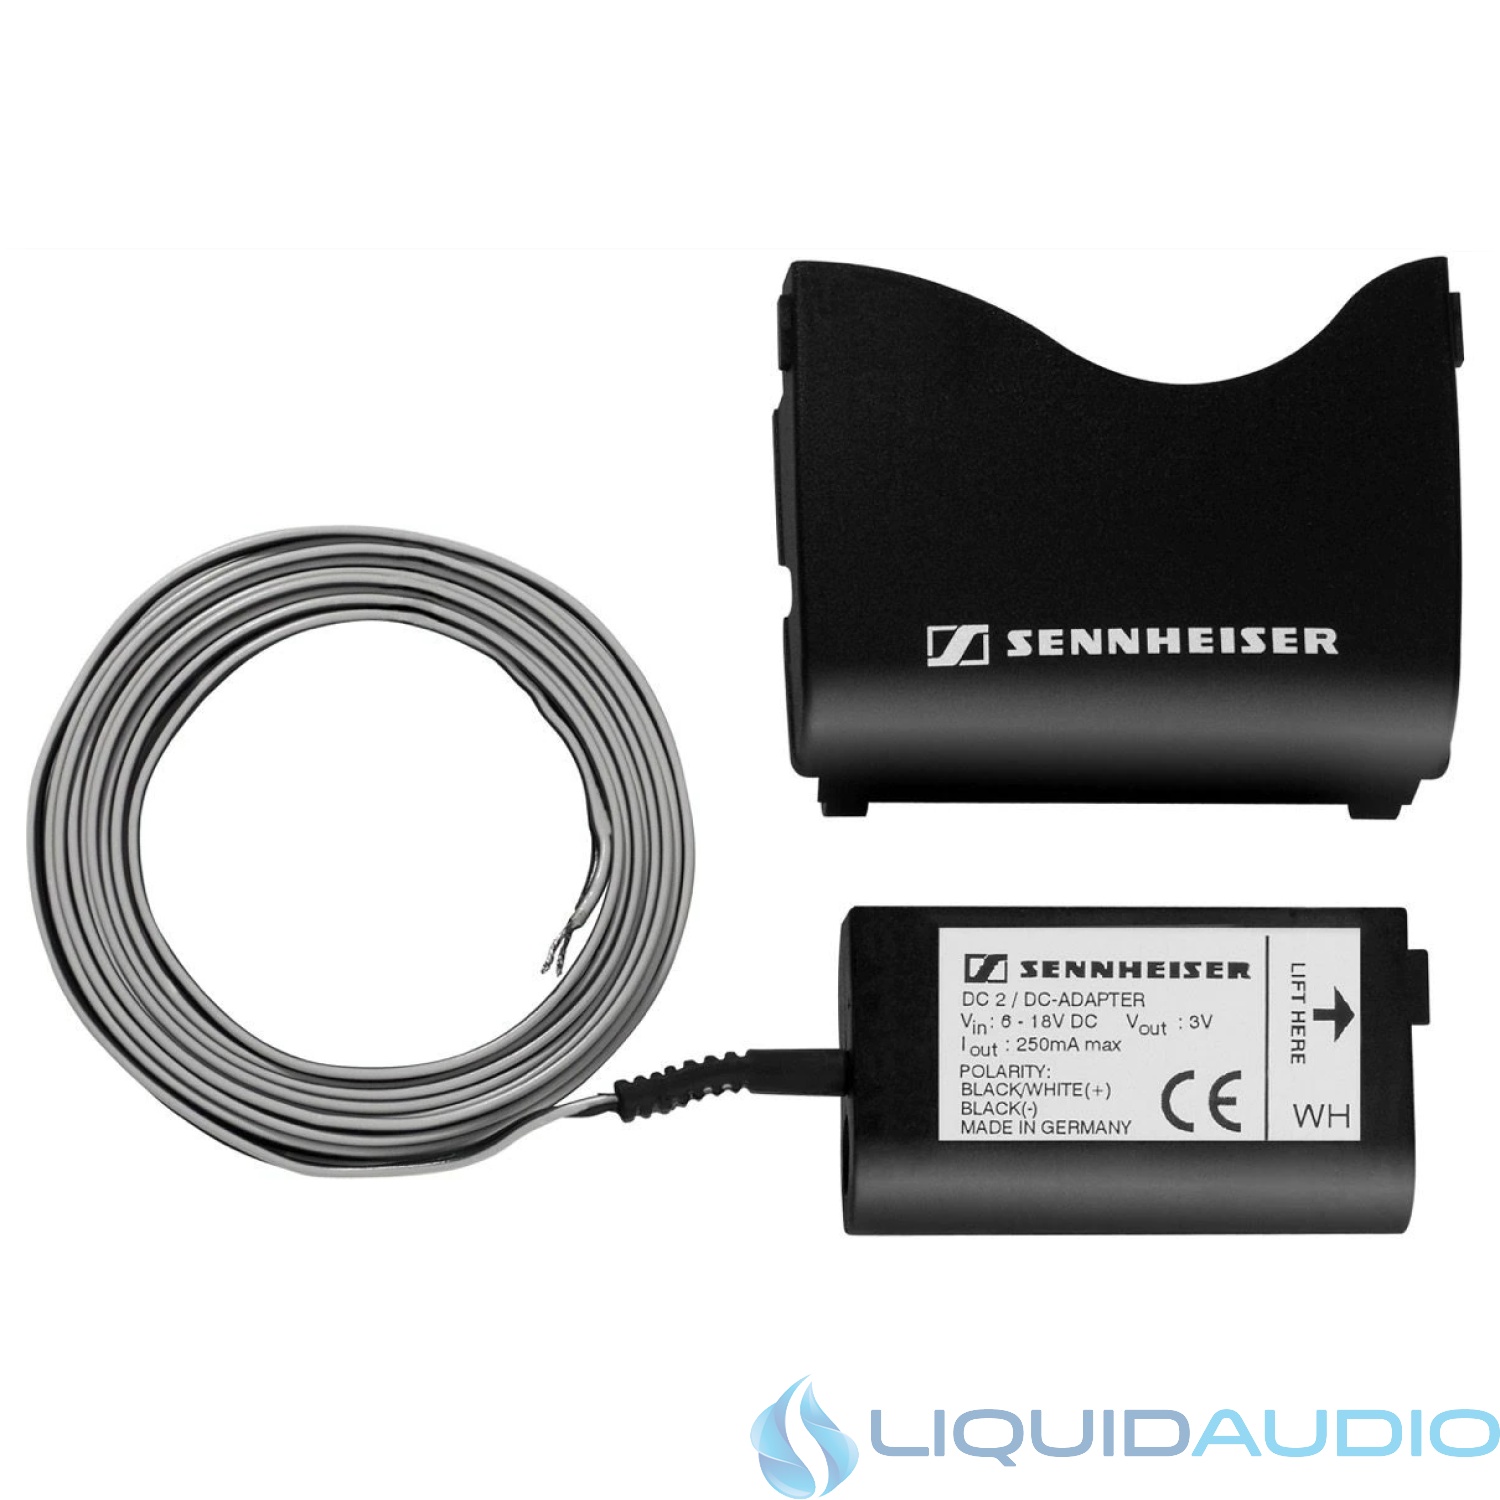 Sennheiser DC2 DC Power Adapter for Evolution G2/G3 and 2000 Series Bodypacks Transmitters